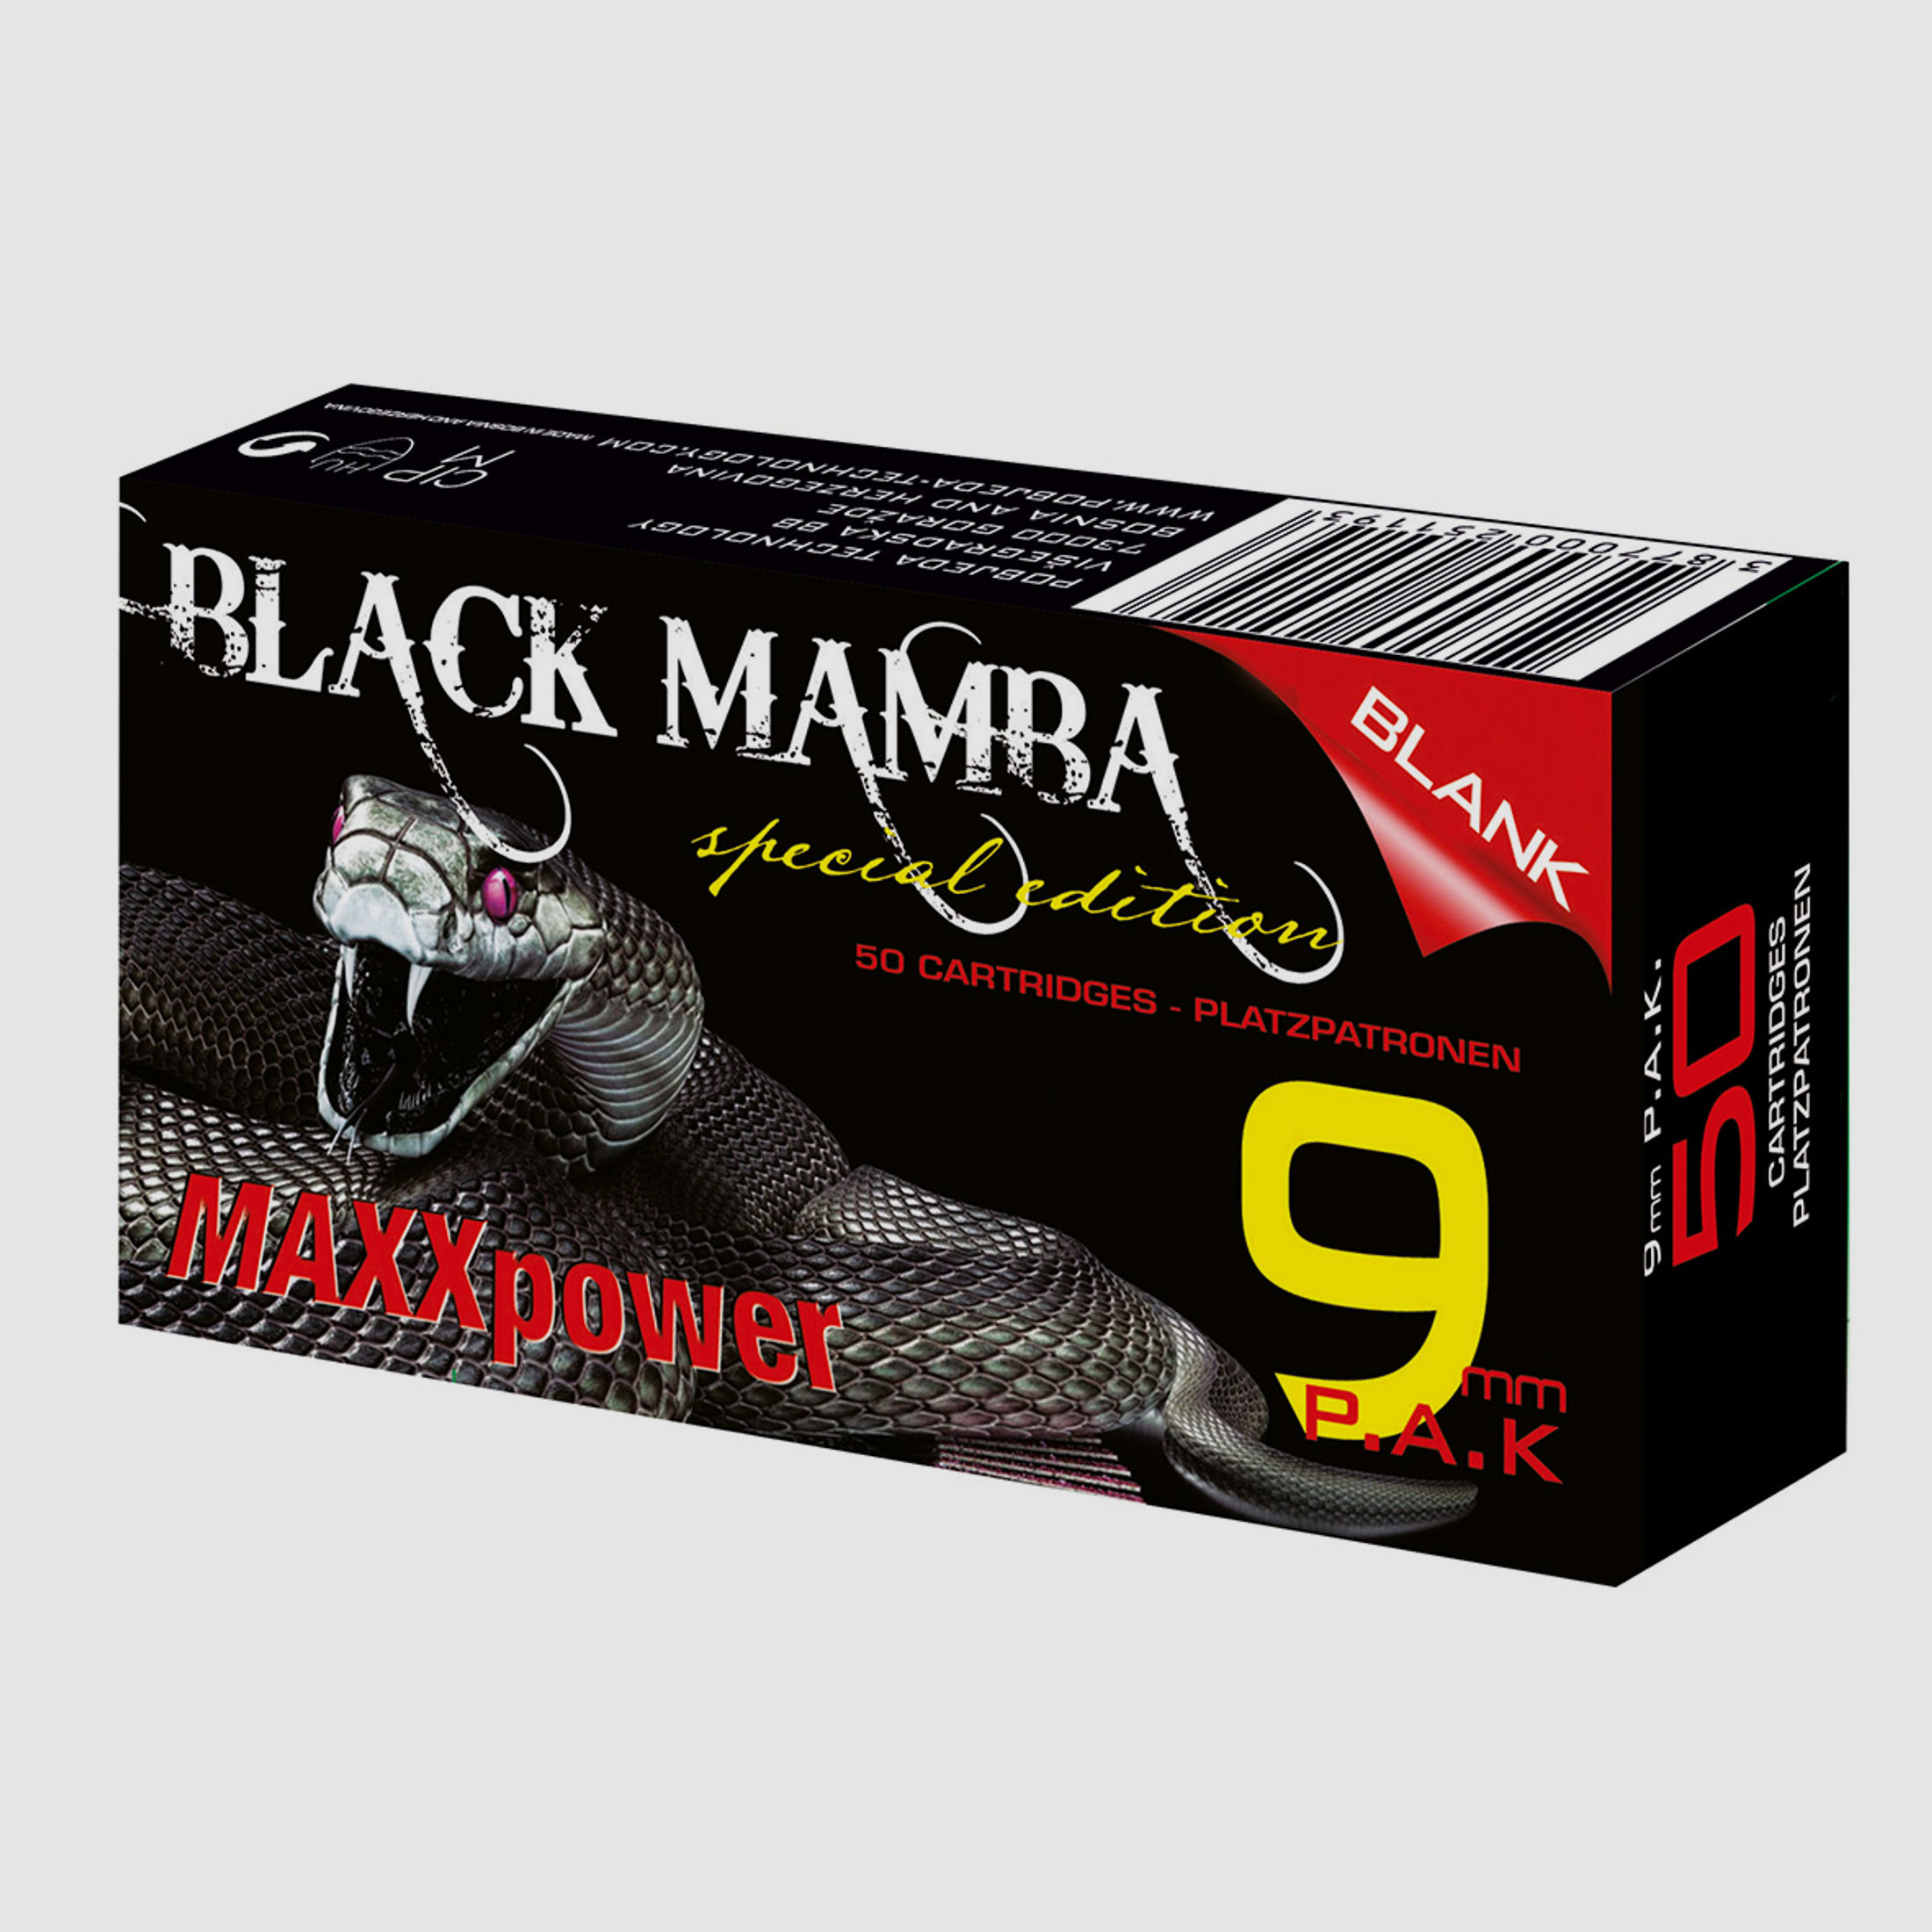 Black Mamba Platzpatronen 9 mm P.A.K. für Pistolen